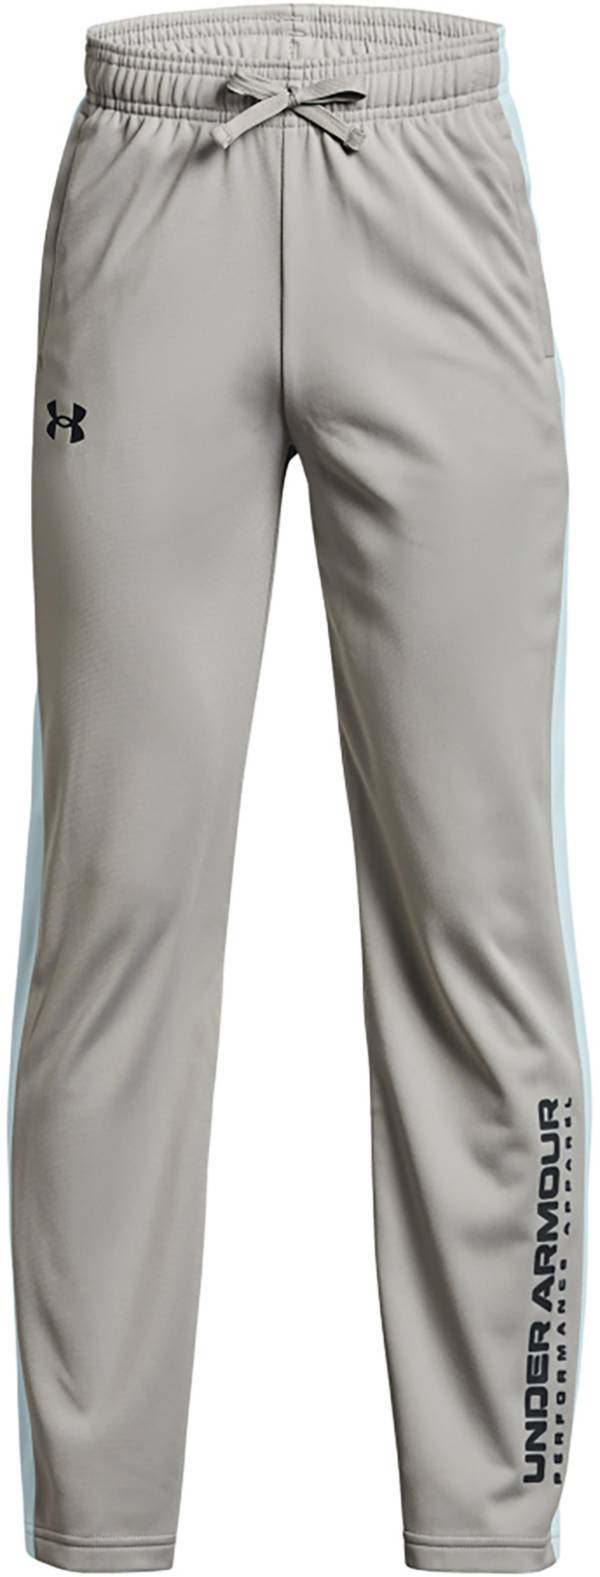 Under Armour Boys' UA Brawler 2.0 Novelty Pants